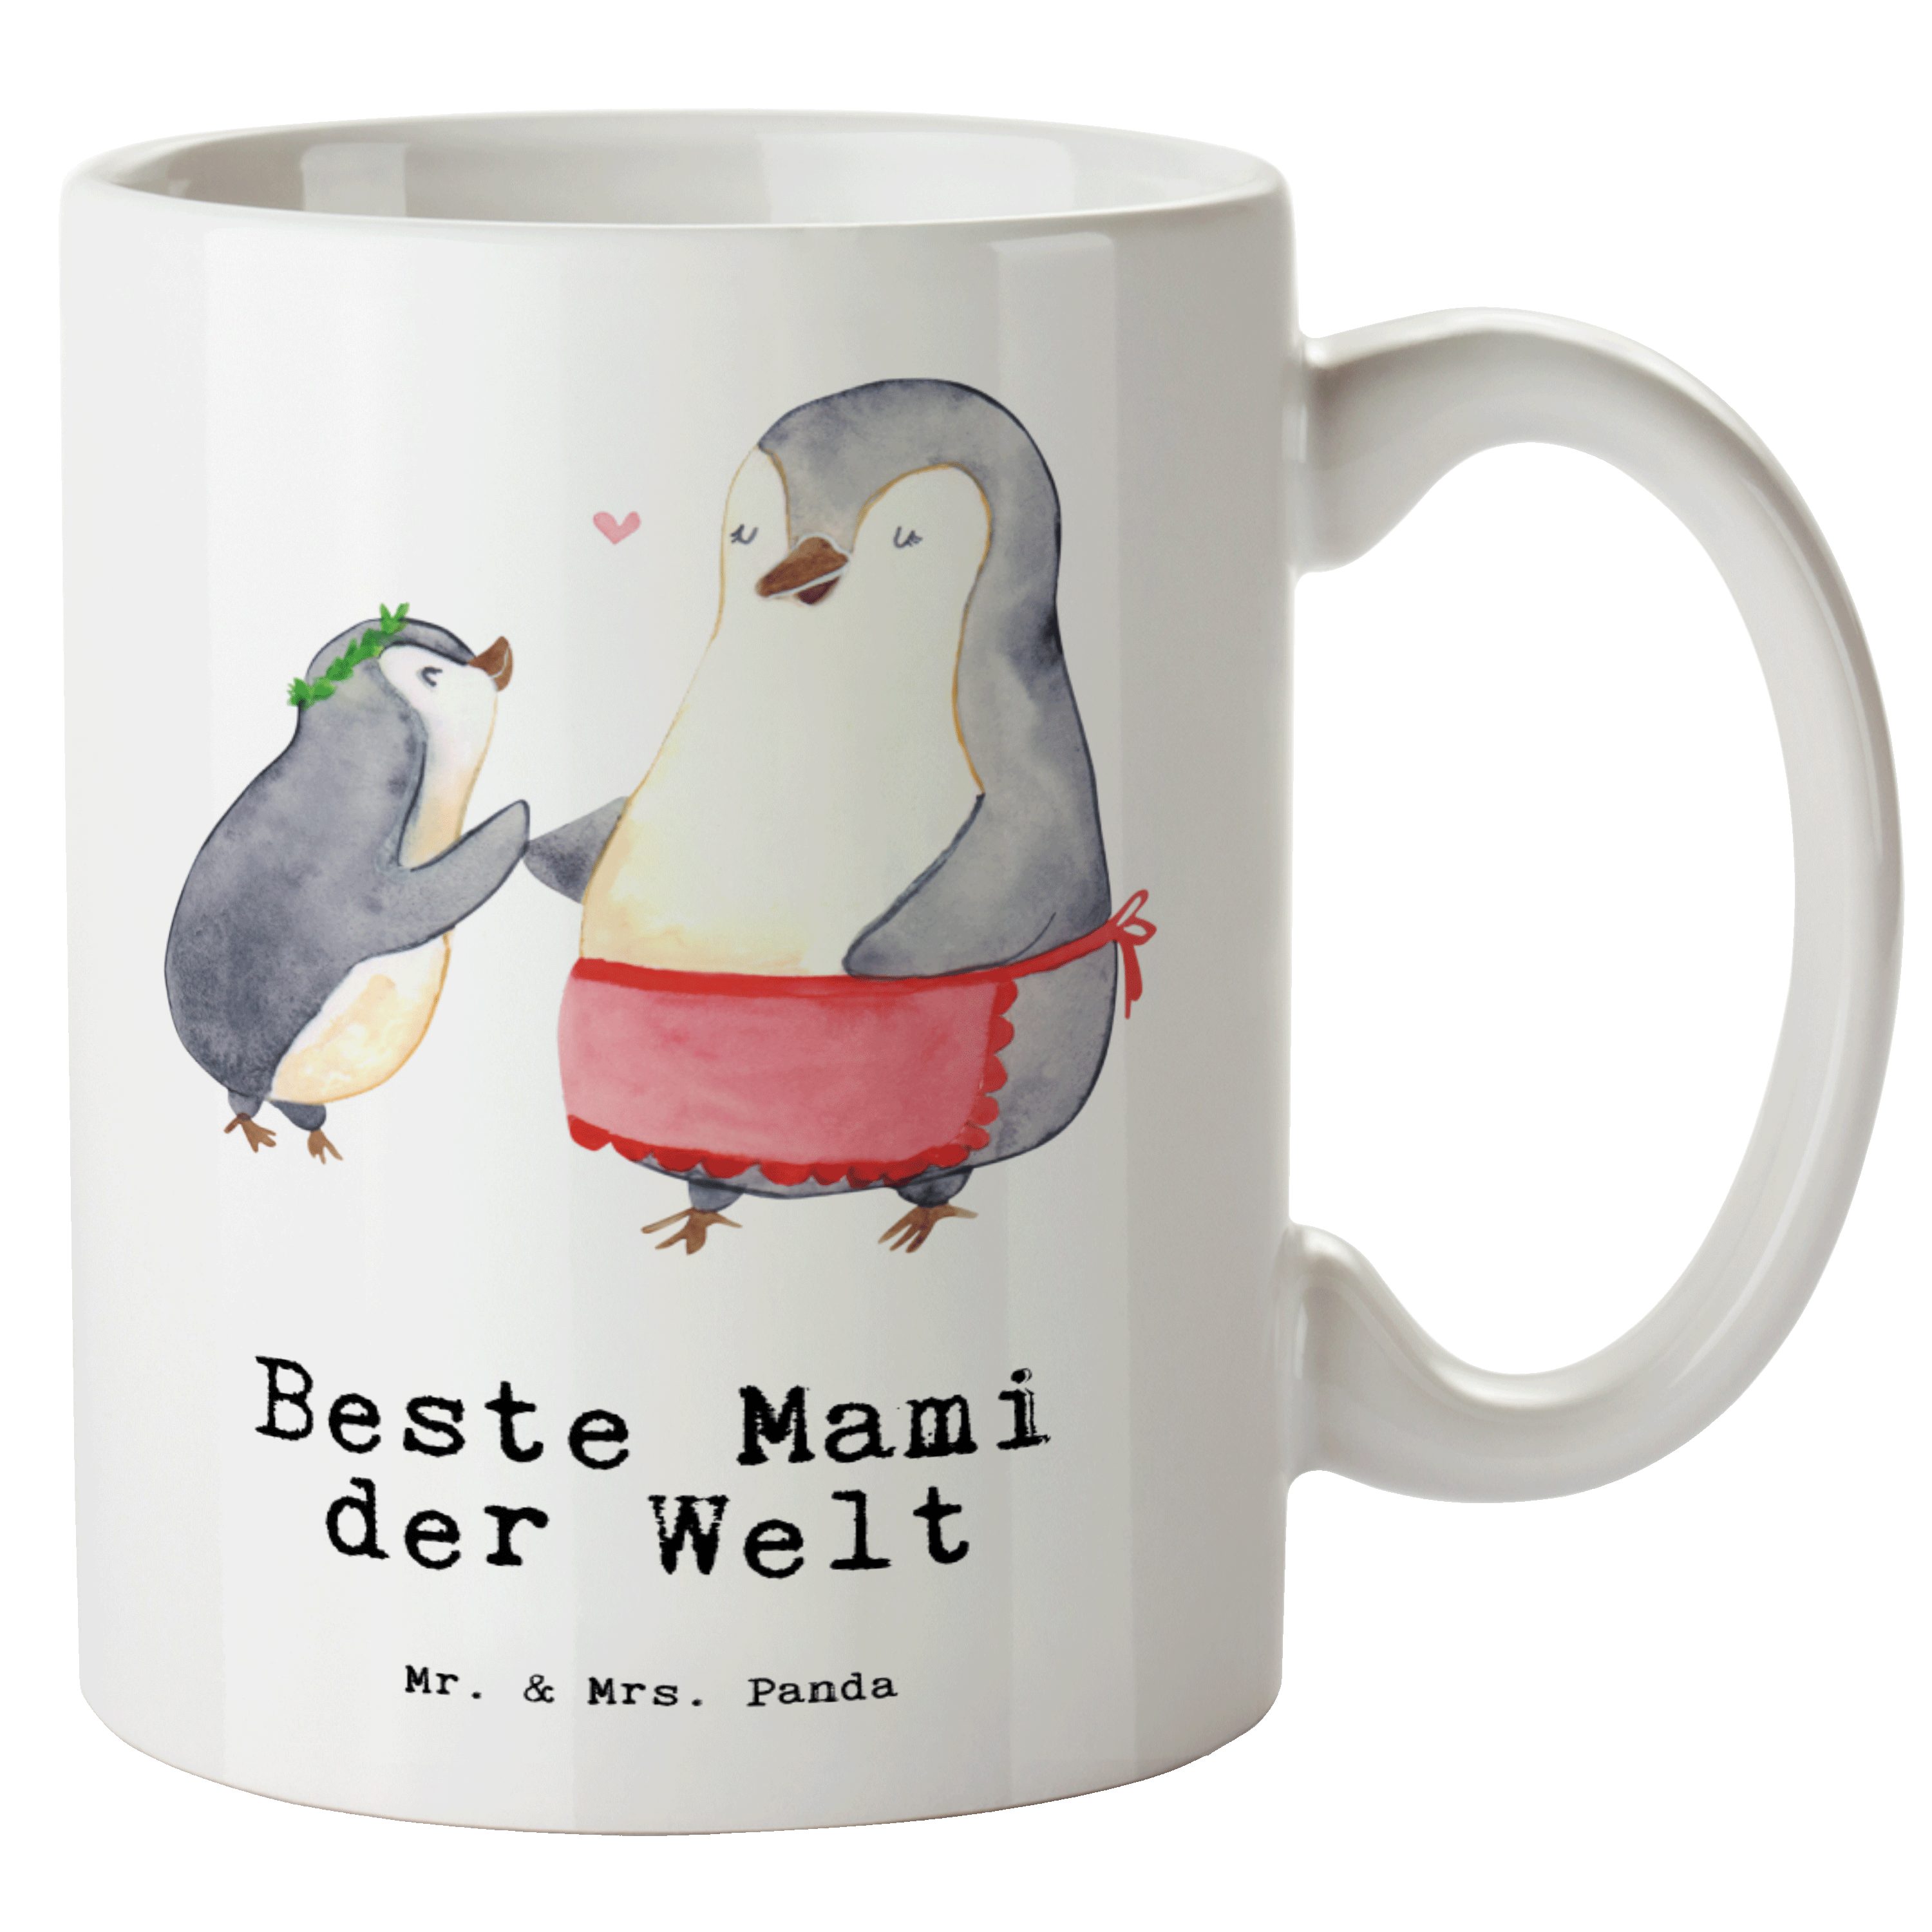 Mr. & Mrs. Panda Tasse Pinguin Beste Mami der Welt - Weiß - Geschenk, Jumbo Tasse, Beste Mam, XL Tasse Keramik